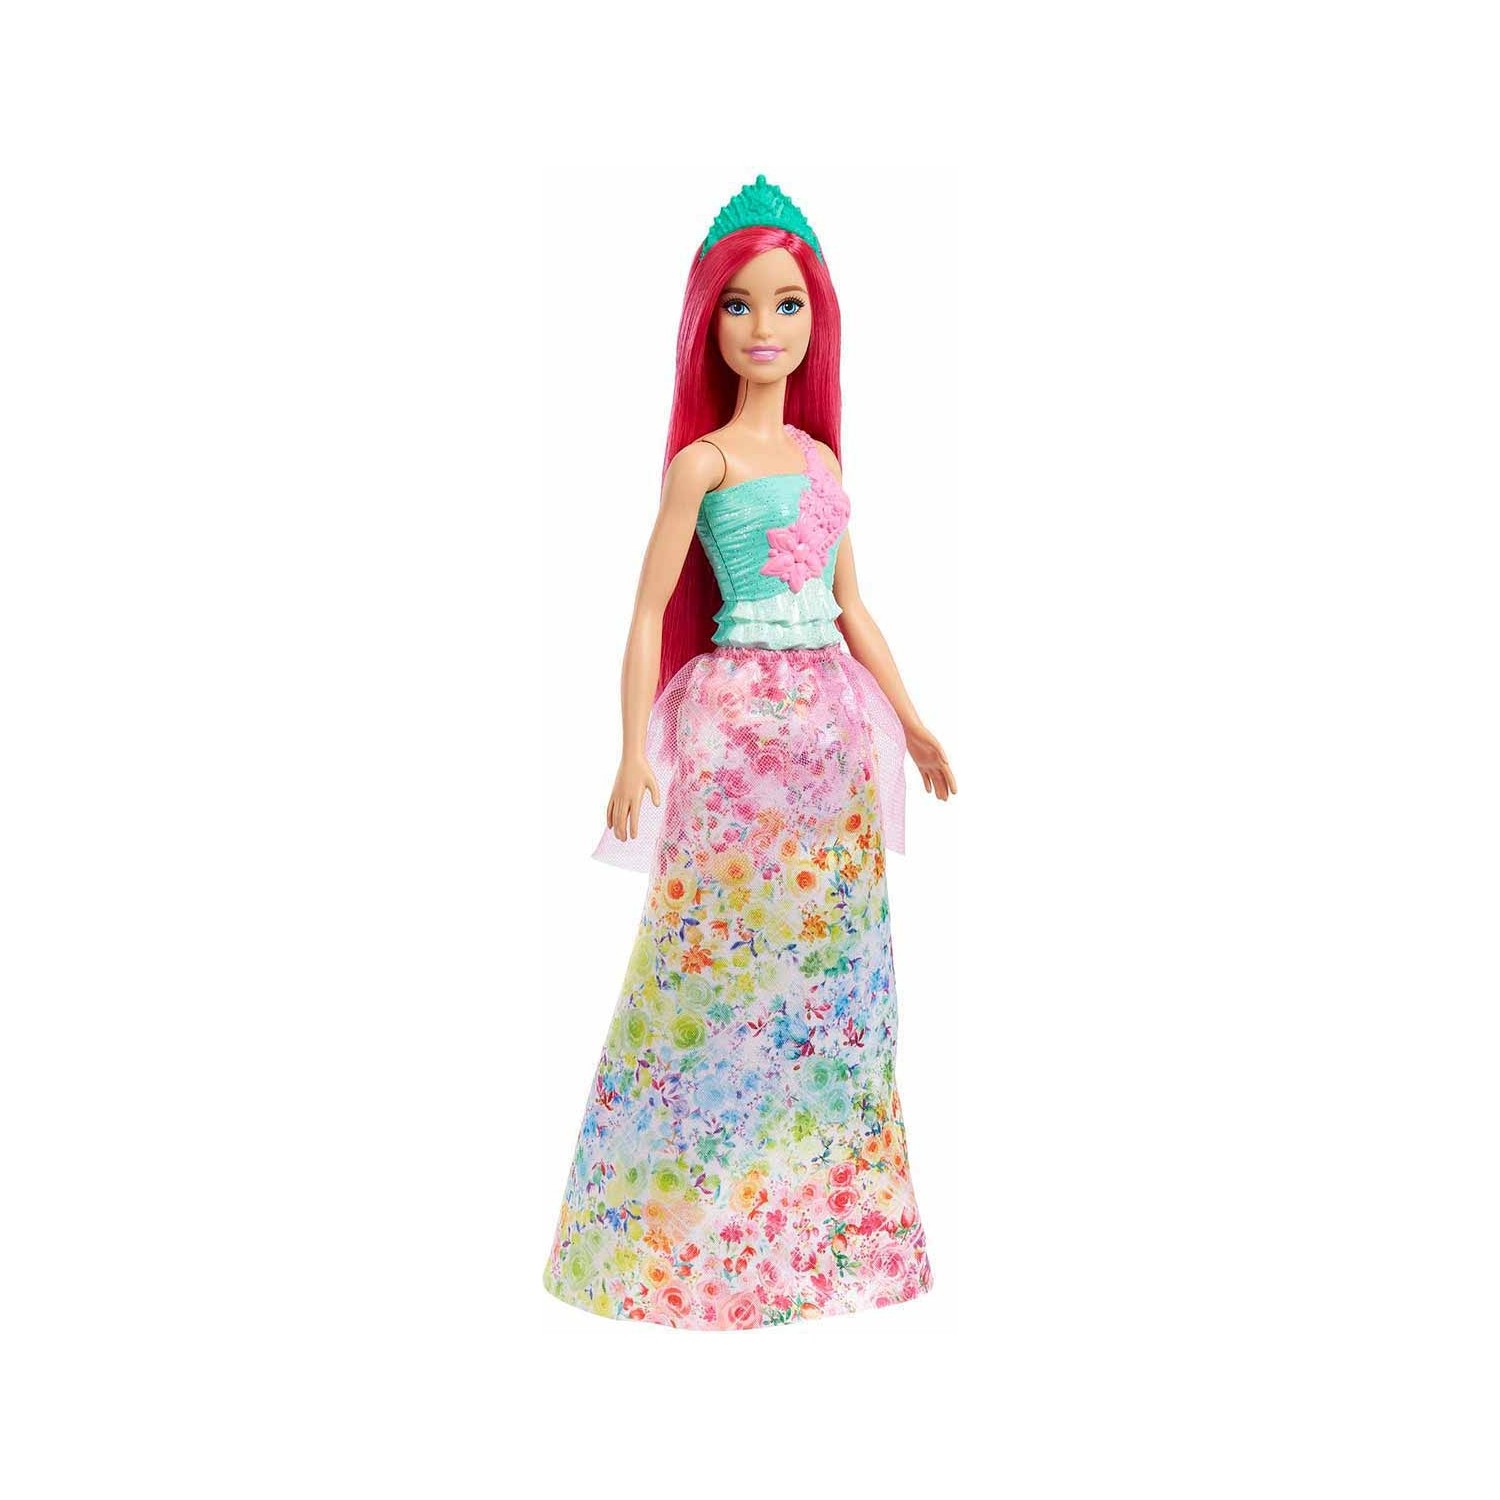 Кукла Barbie Dreamtopia Princess HGR15 кукла barbie dreamtopia rainbow latiin princess